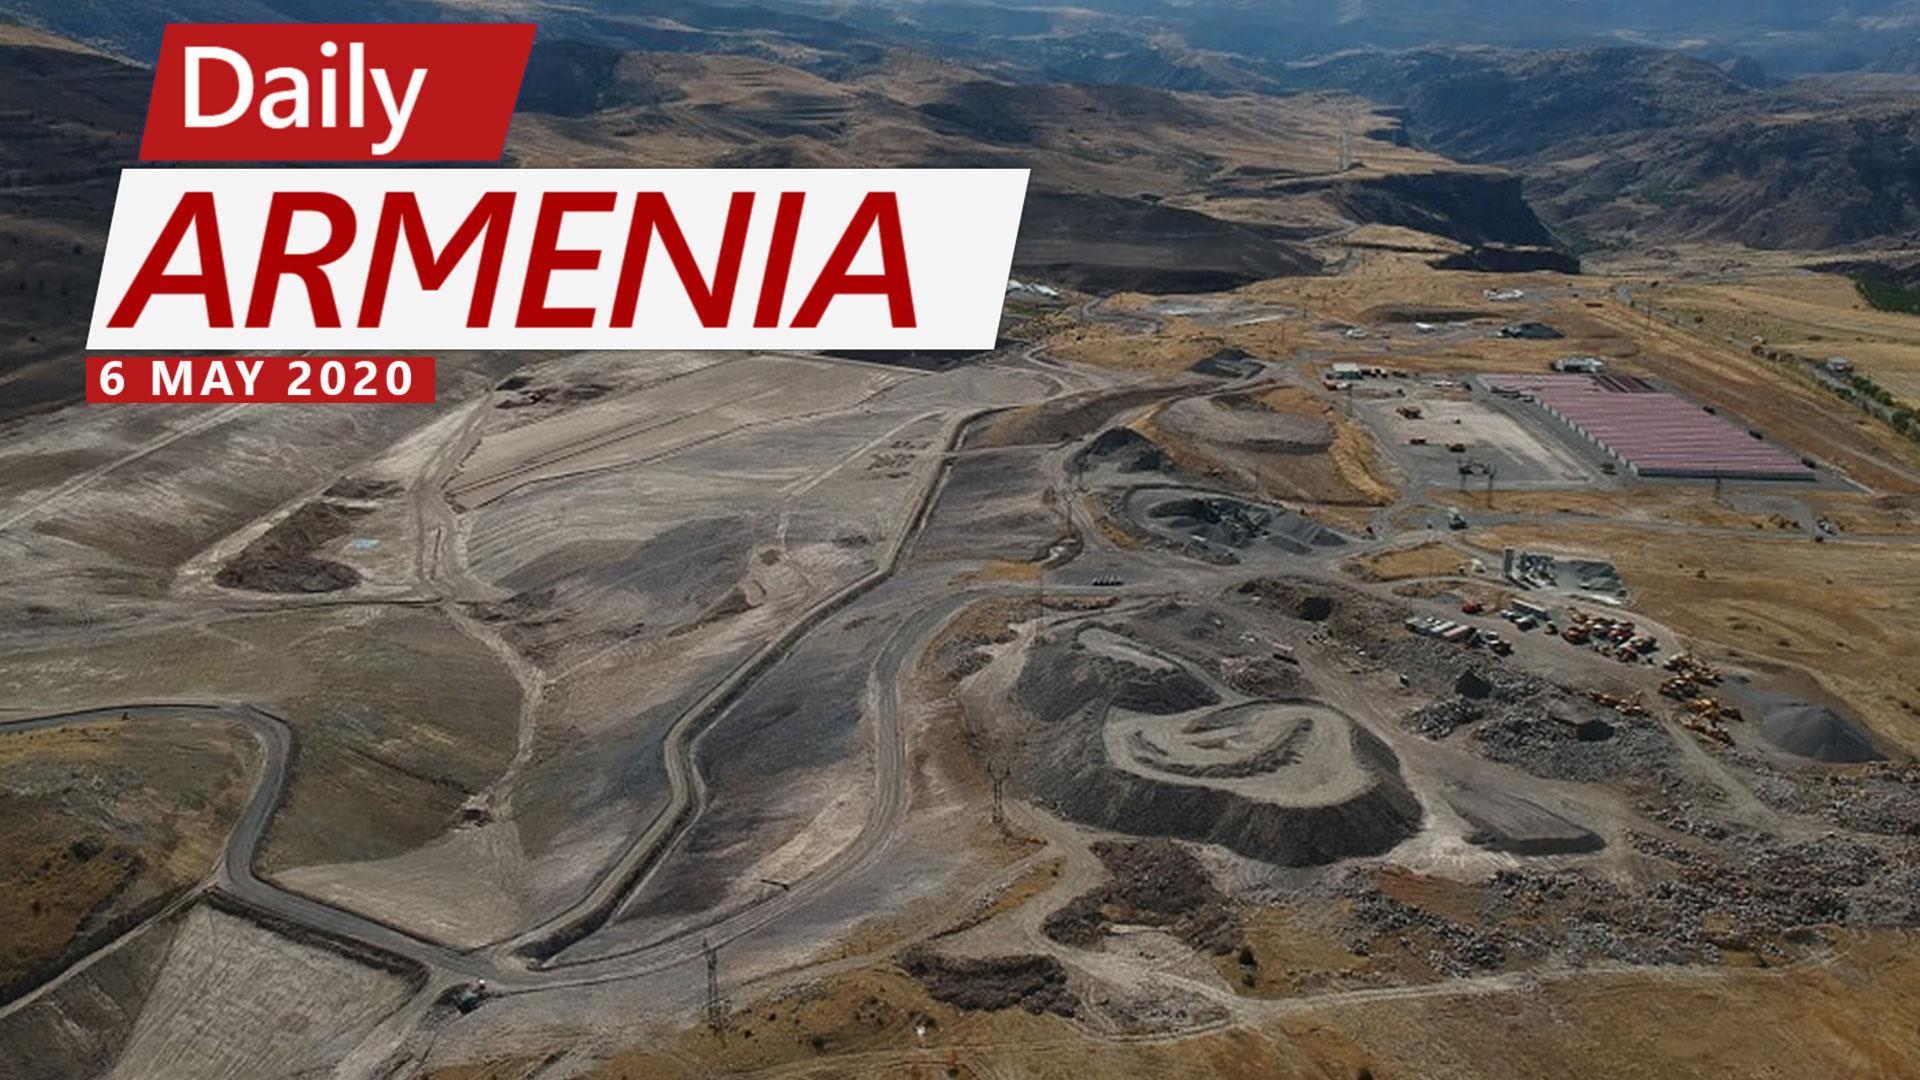 EU Report: US and UK Pressured Armenia Over Amulsar Mining Dispute